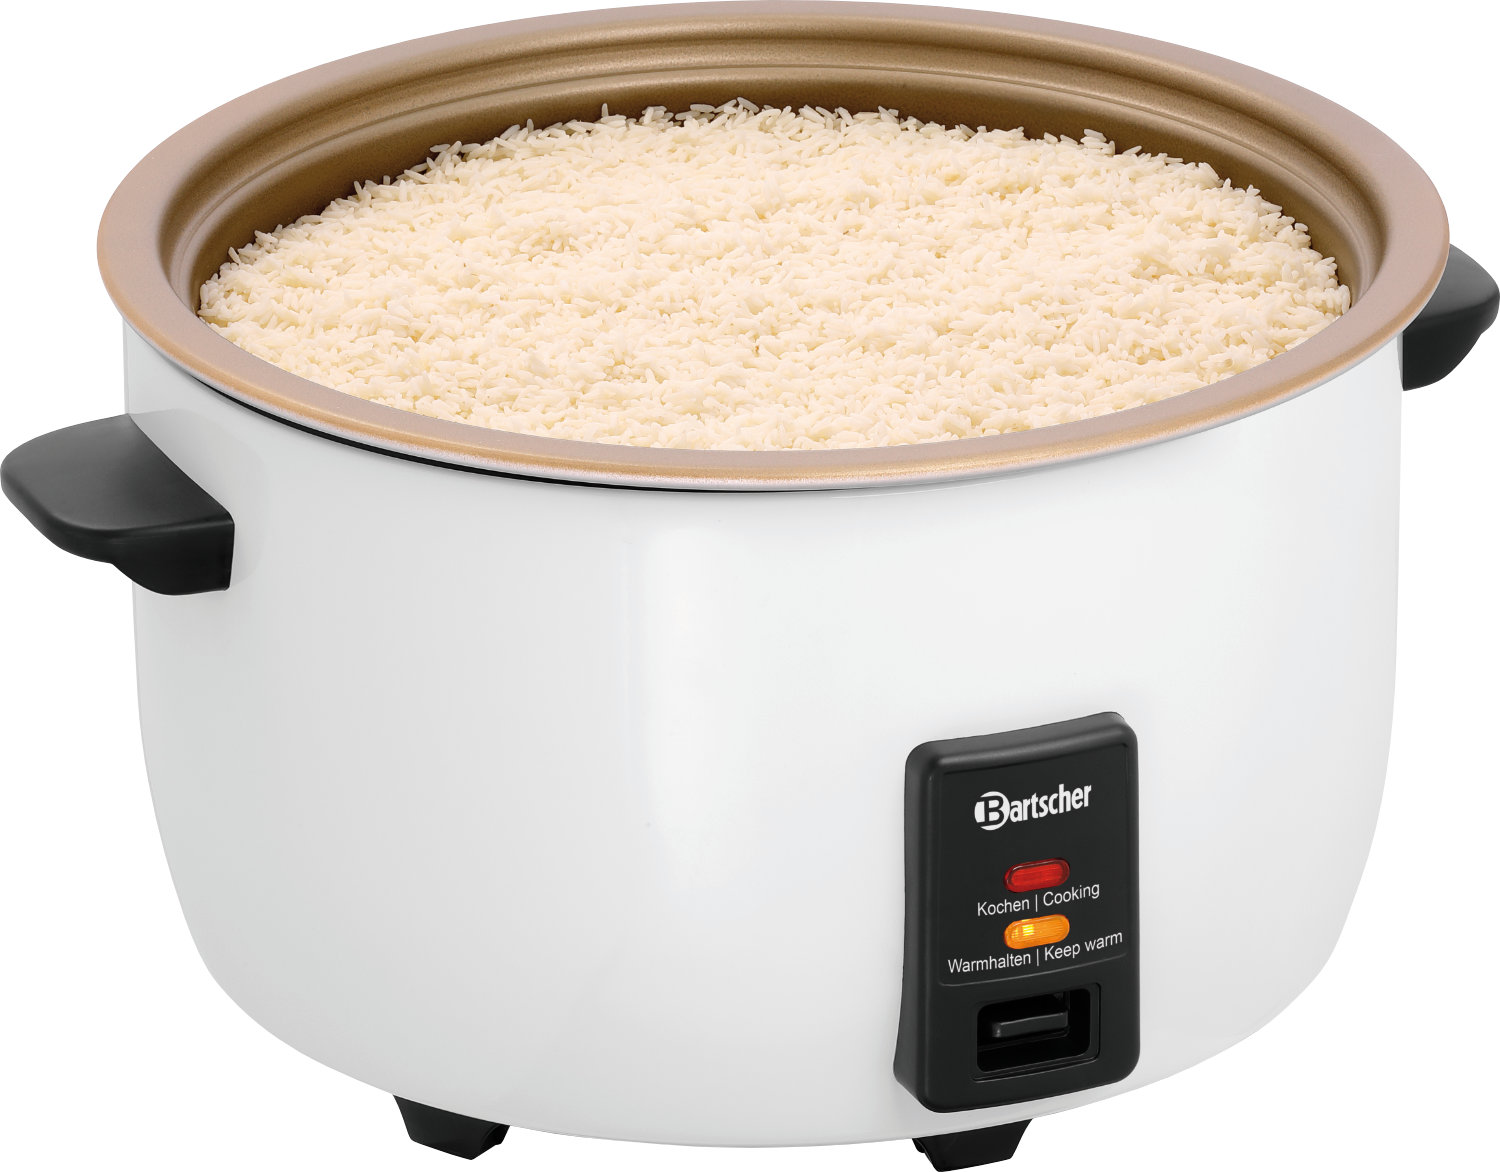  Bartscher Rice cooker 12L W 